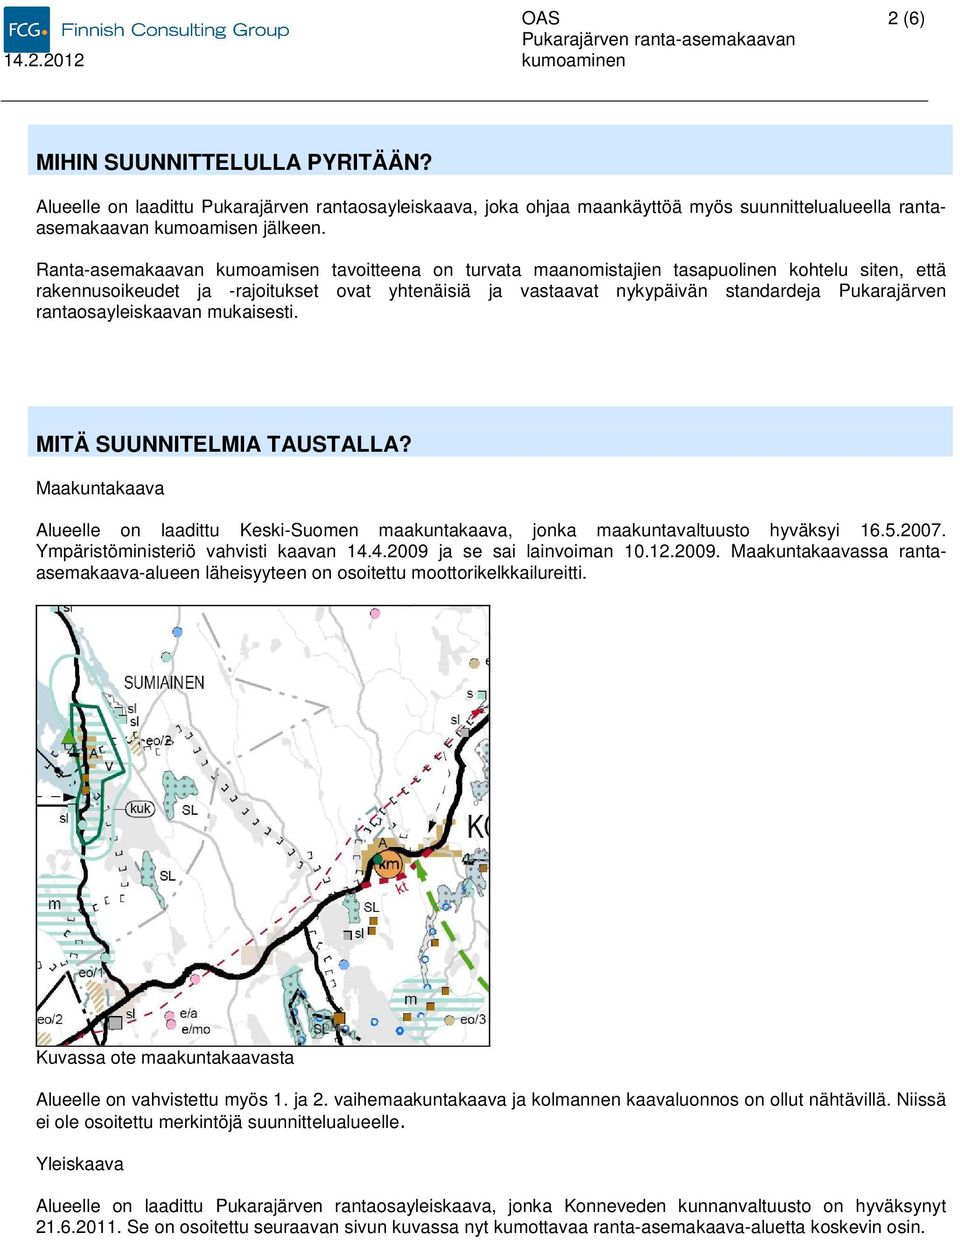 rantaosayleiskaavan mukaisesti. MITÄ SUUNNITELMIA TAUSTALLA? Maakuntakaava Alueelle on laadittu Keski-Suomen maakuntakaava, jonka maakuntavaltuusto hyväksyi 16.5.2007.